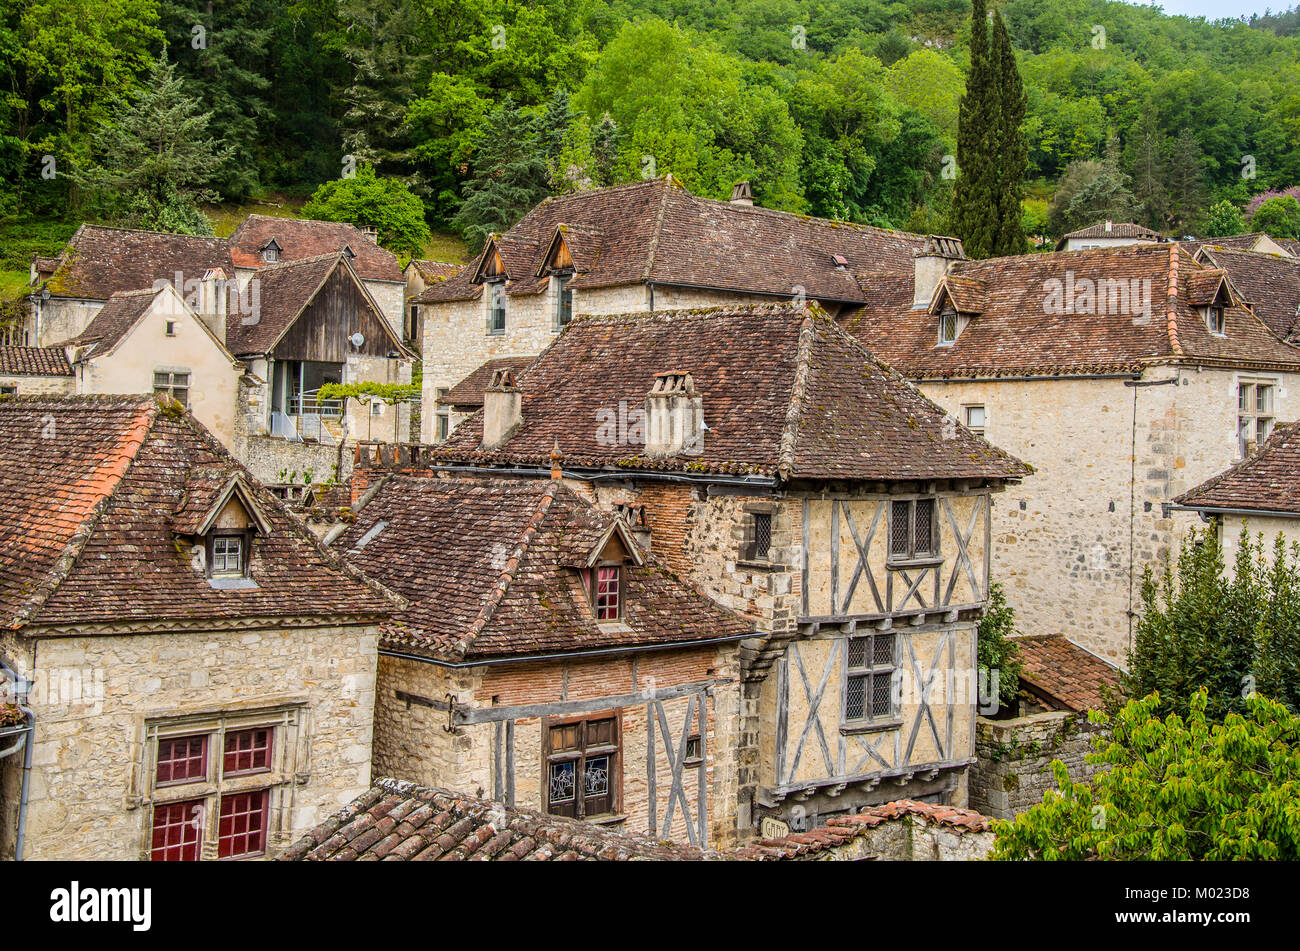 Possiamo vedere la villa di Saint Cirq Lapopie designato come uno dei più bei francesi medievali ville situate nel parco naturale des Causses du Querc Foto Stock